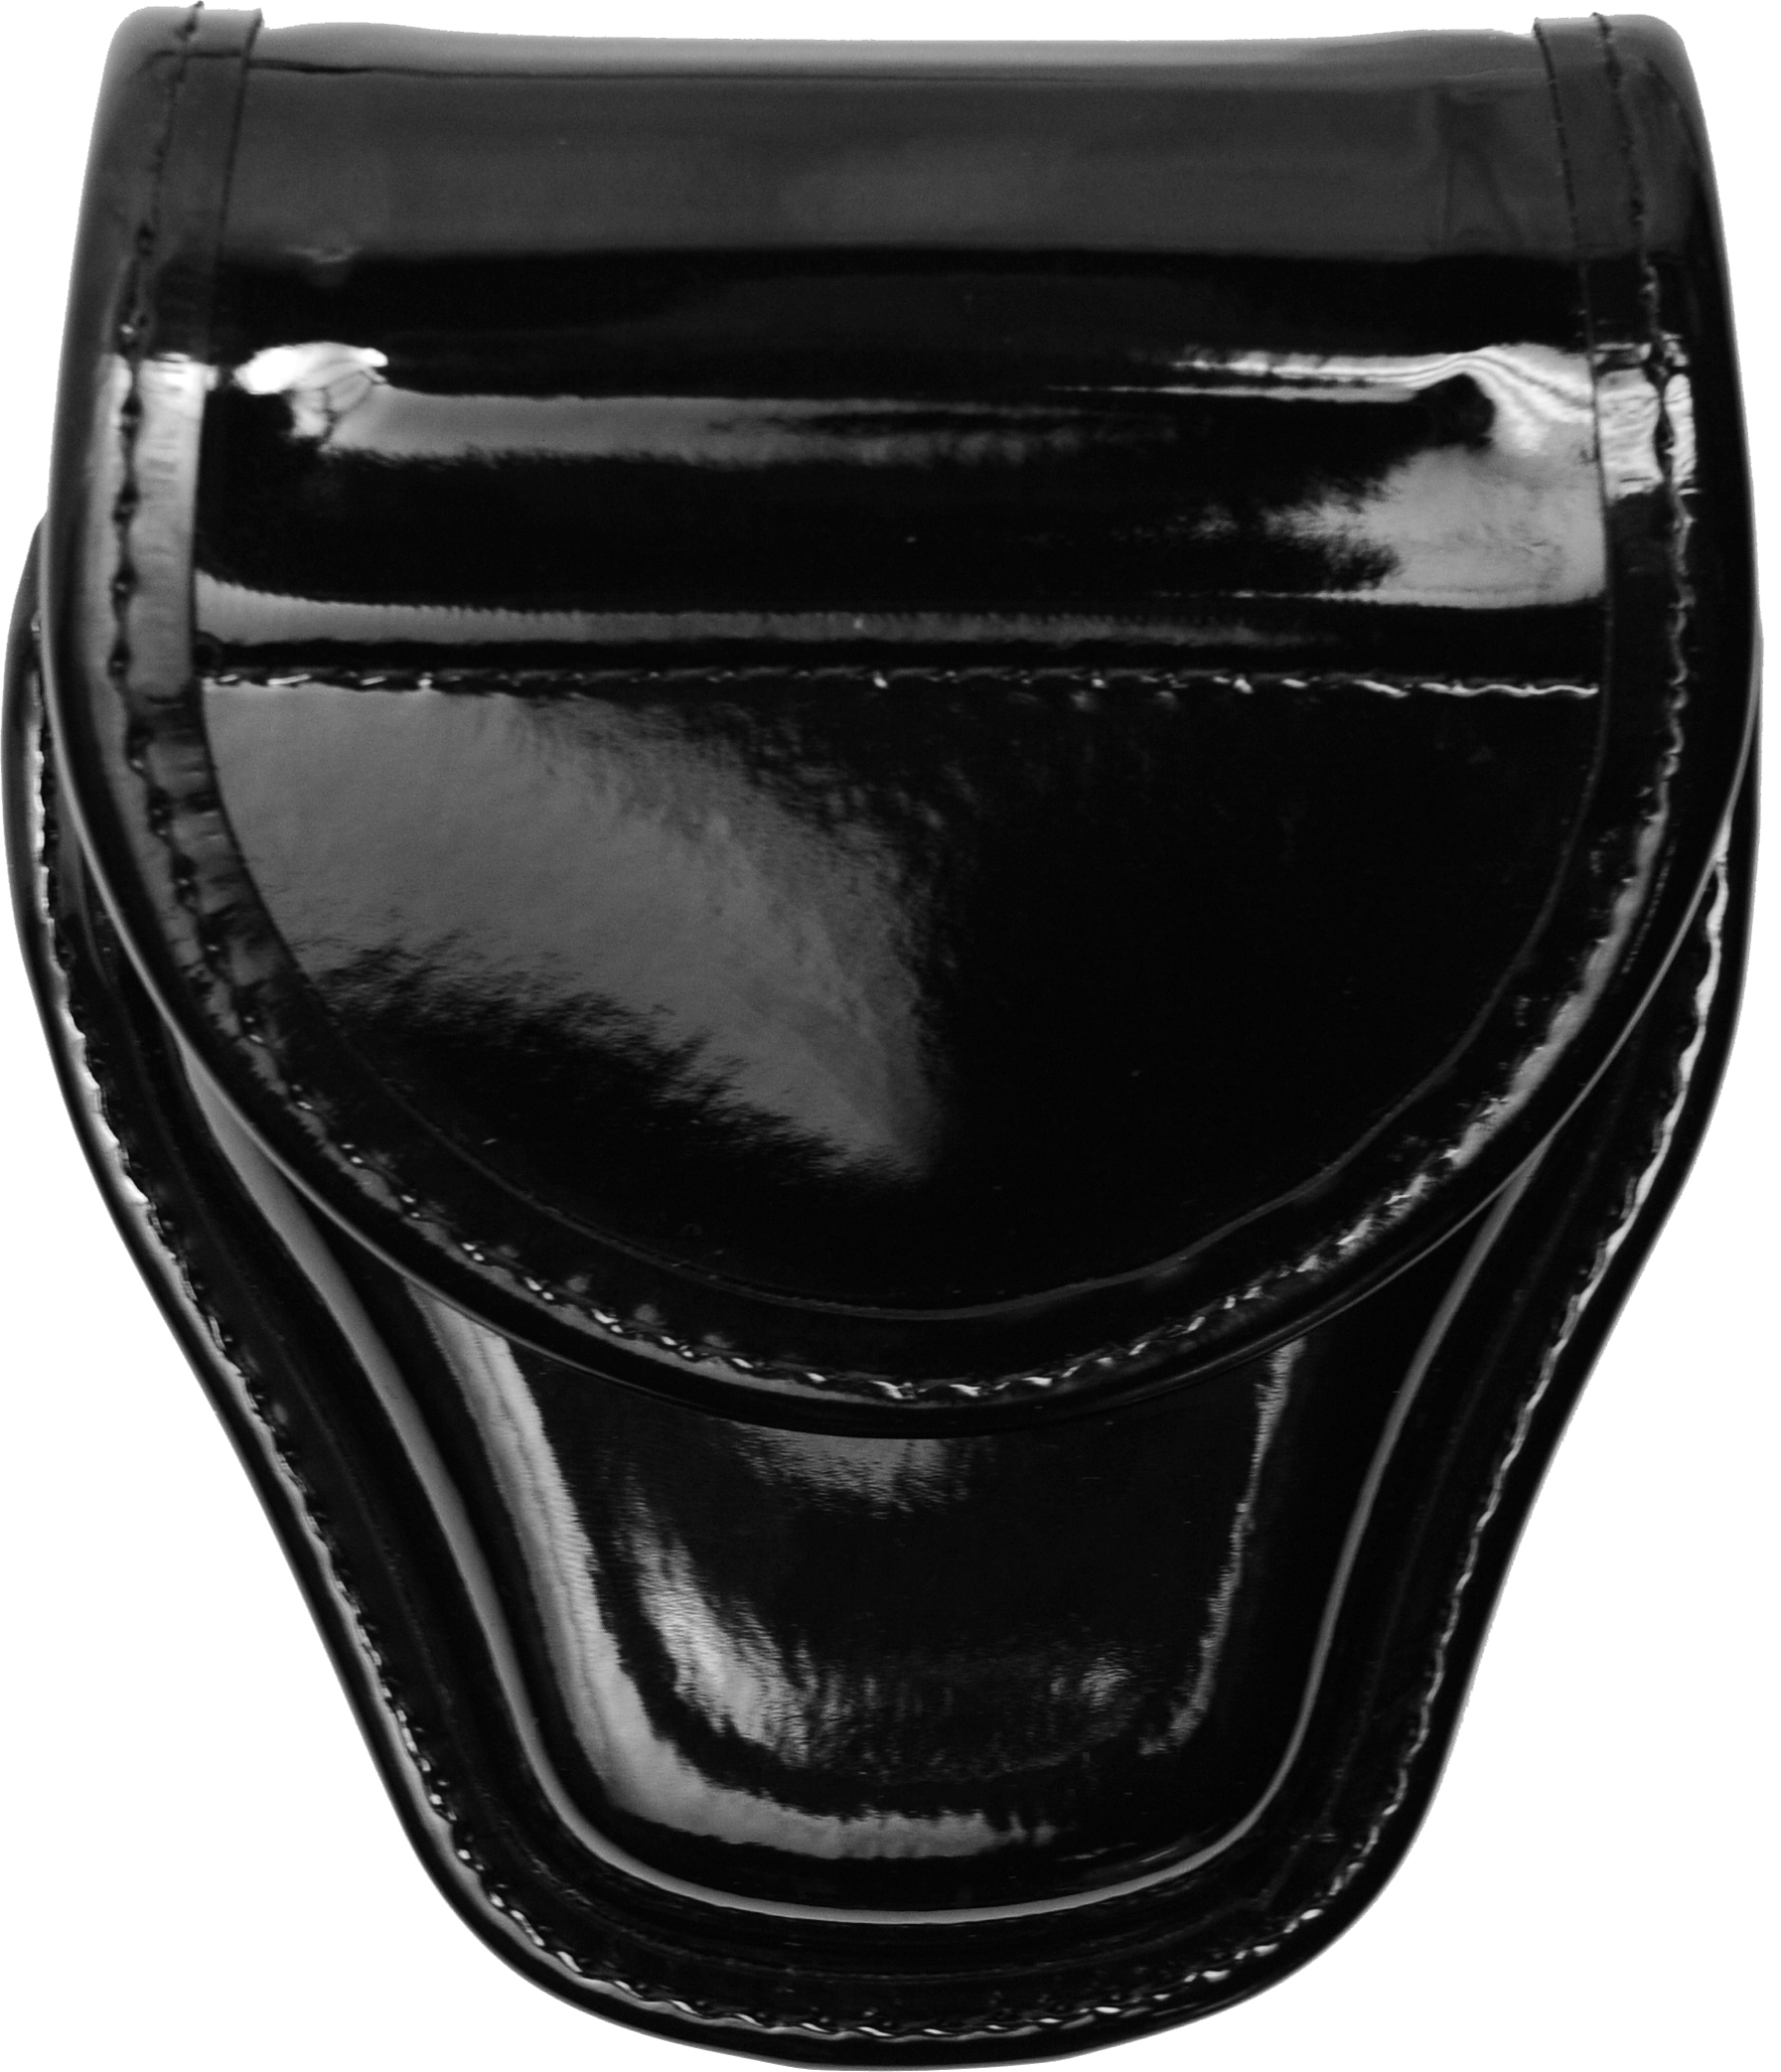 Bianchi 22063 Black 7900 Basketweave Accumold Elite Covered Handcuff Cuff Case 